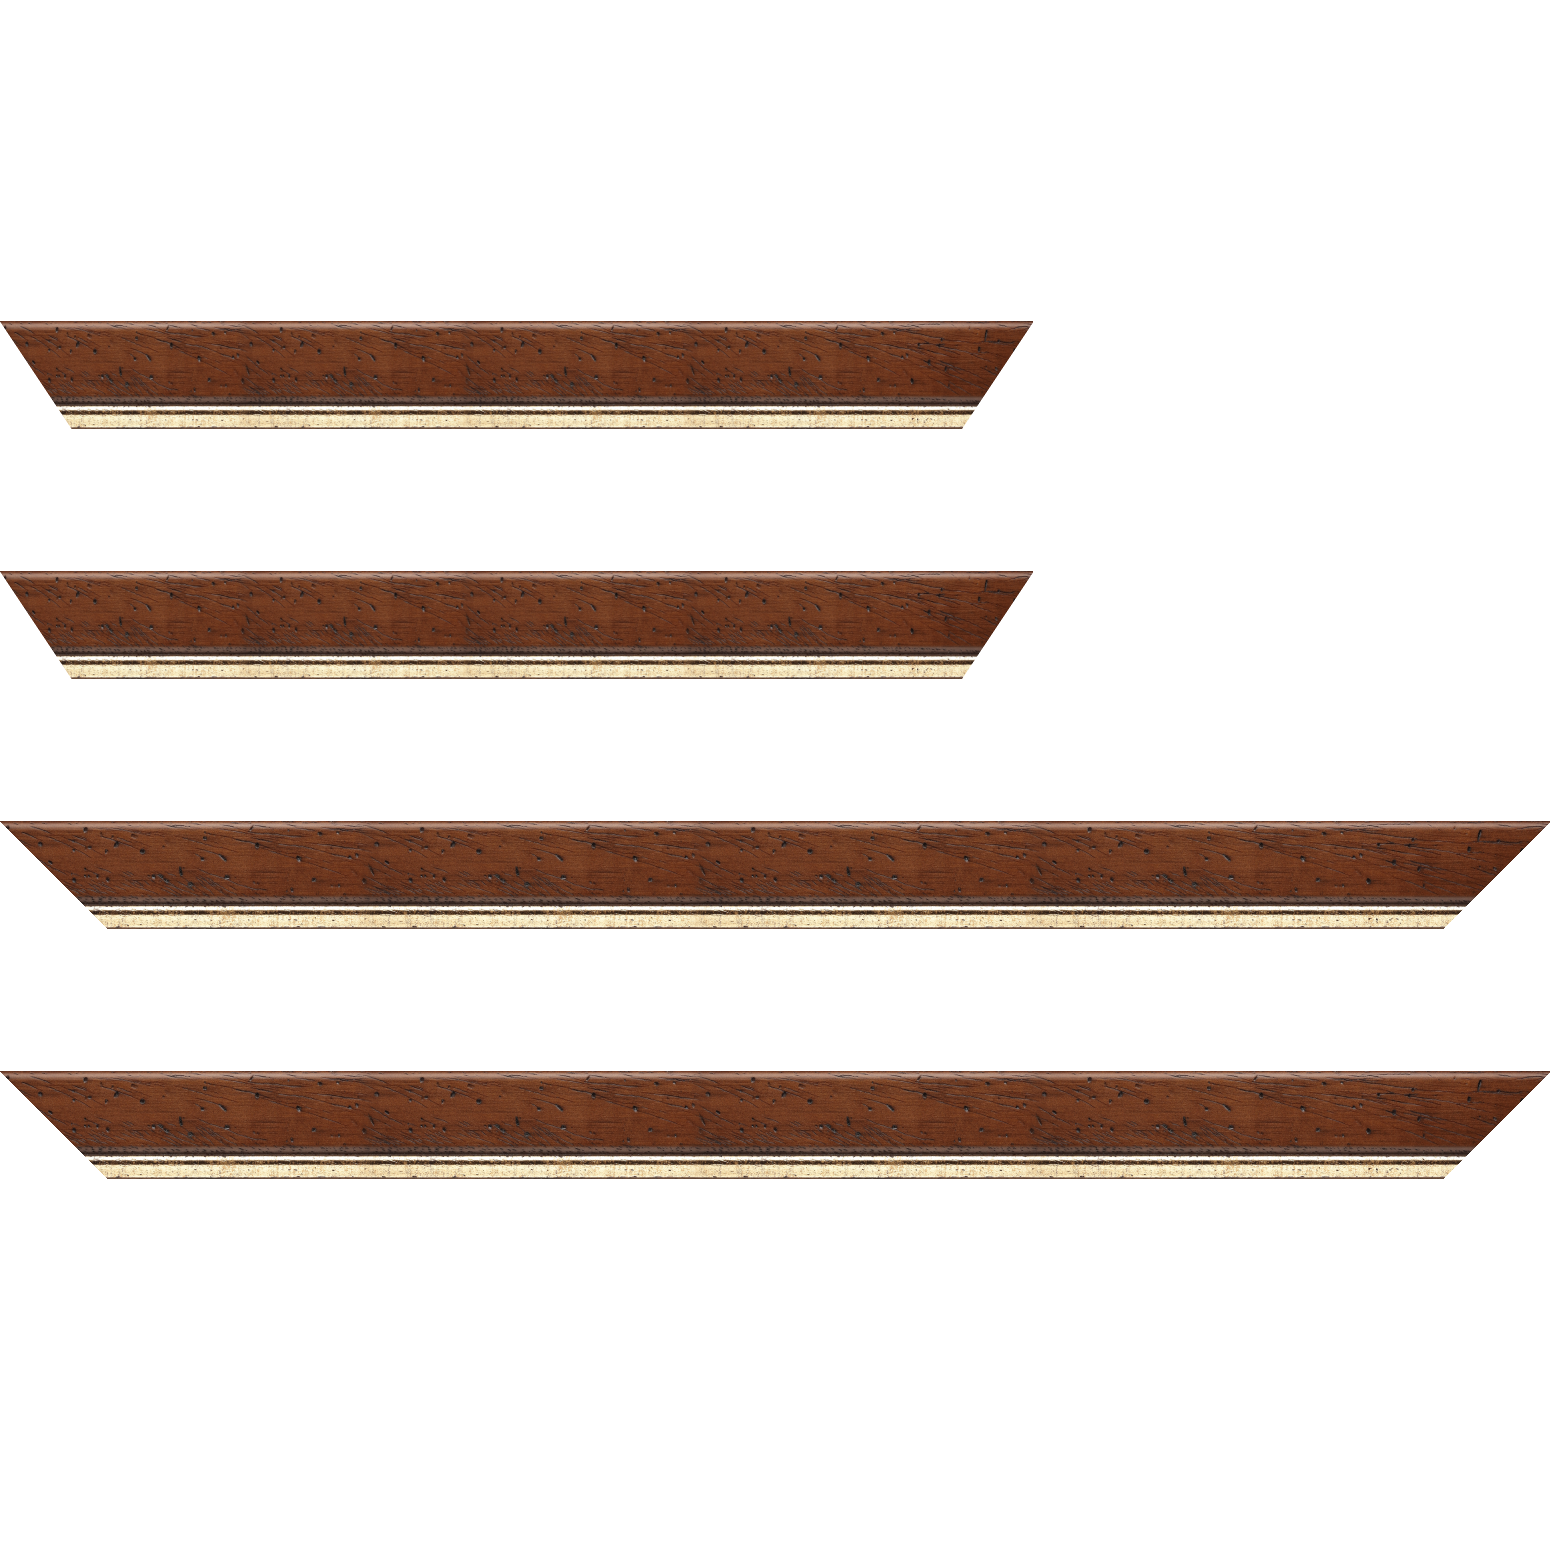 Baguette bois profil arrondi largeur 3.5cm marron satiné classique filet or